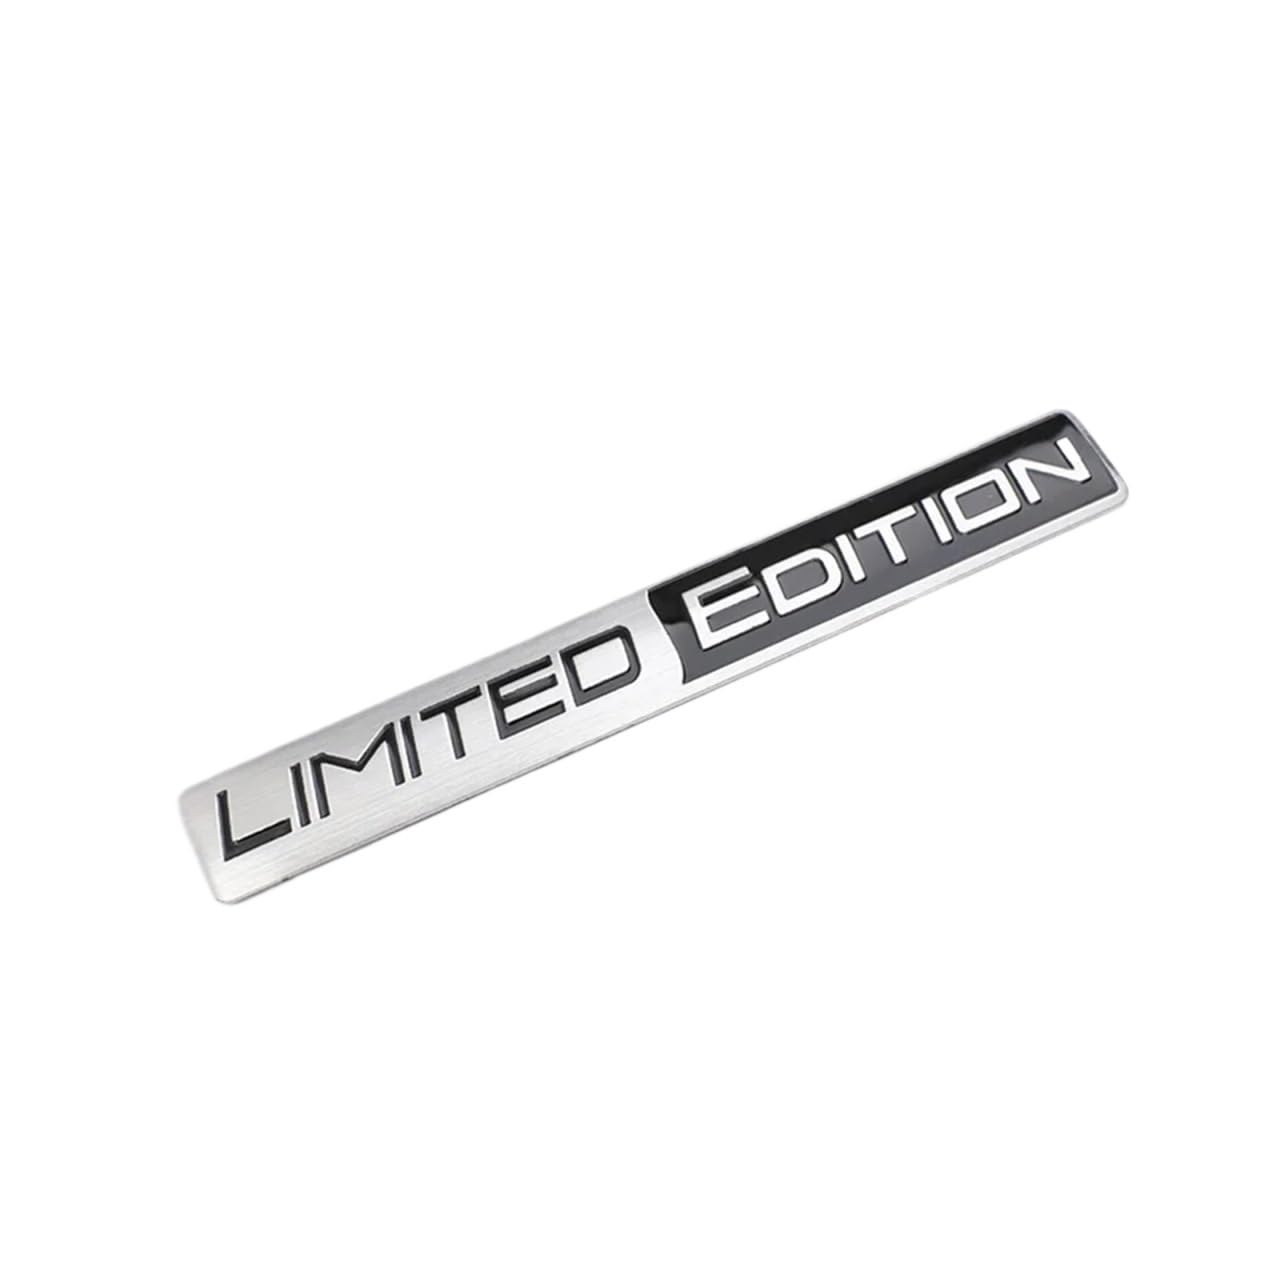 Aluminium Limited Edition Auto Kofferraum Aufkleber Aufkleber Abzeichen Emblem for Motorrad Aufkleber Auto Tuning Dekoration(Silver black) von NRUOS